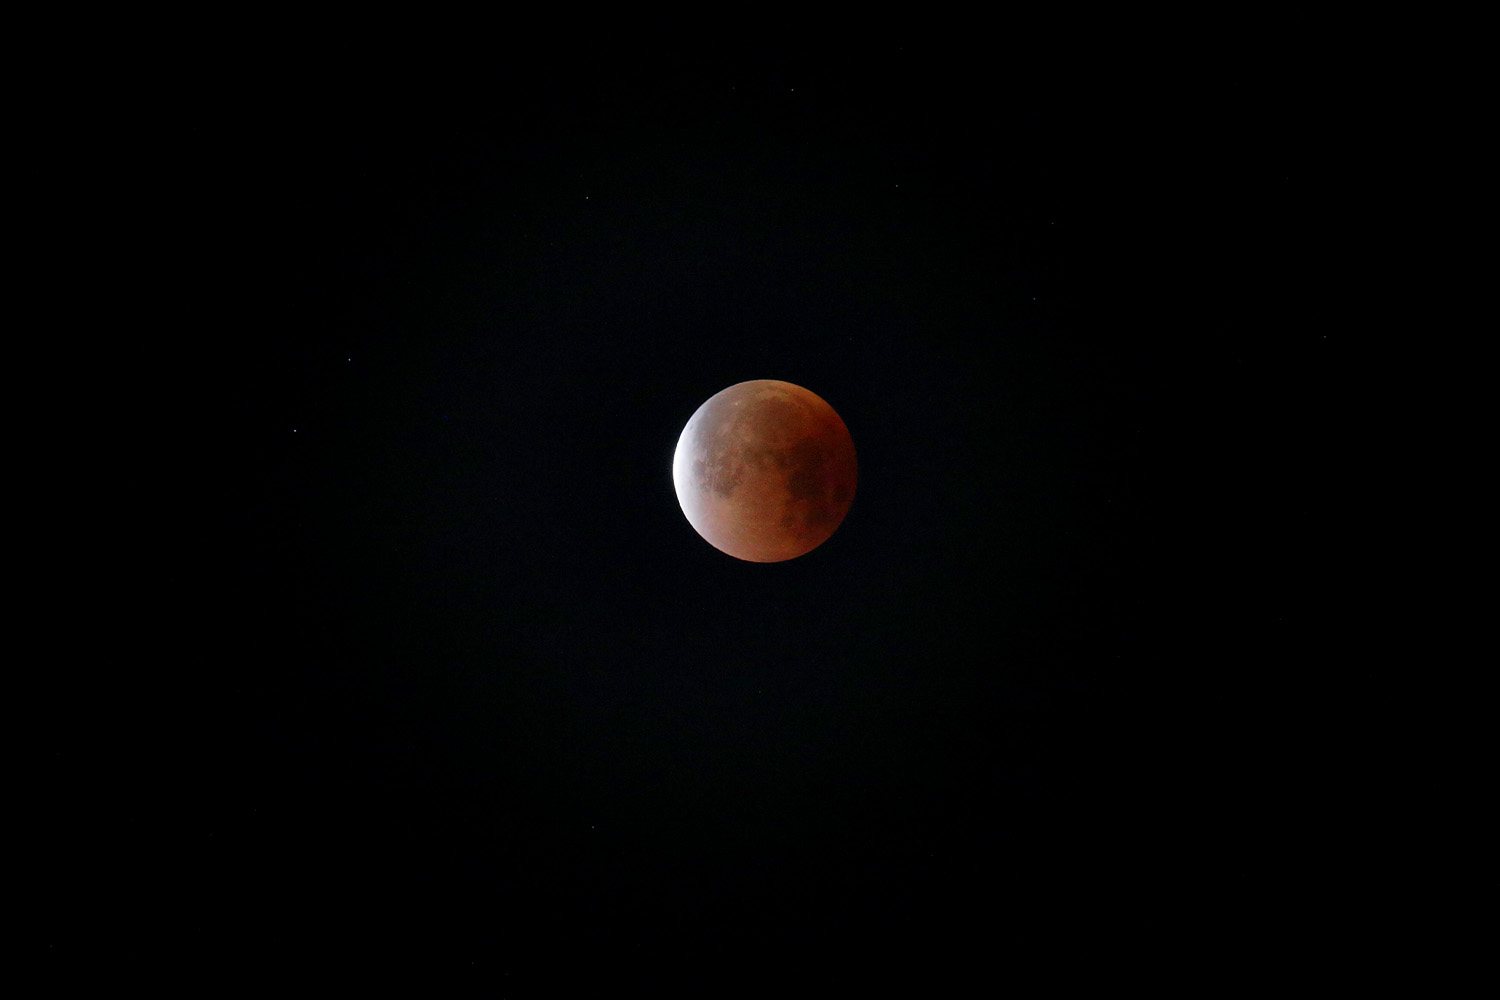 bill-hocker-lunar-eclipse-berkeley-california-6:00am-pst-jan-31st-2018